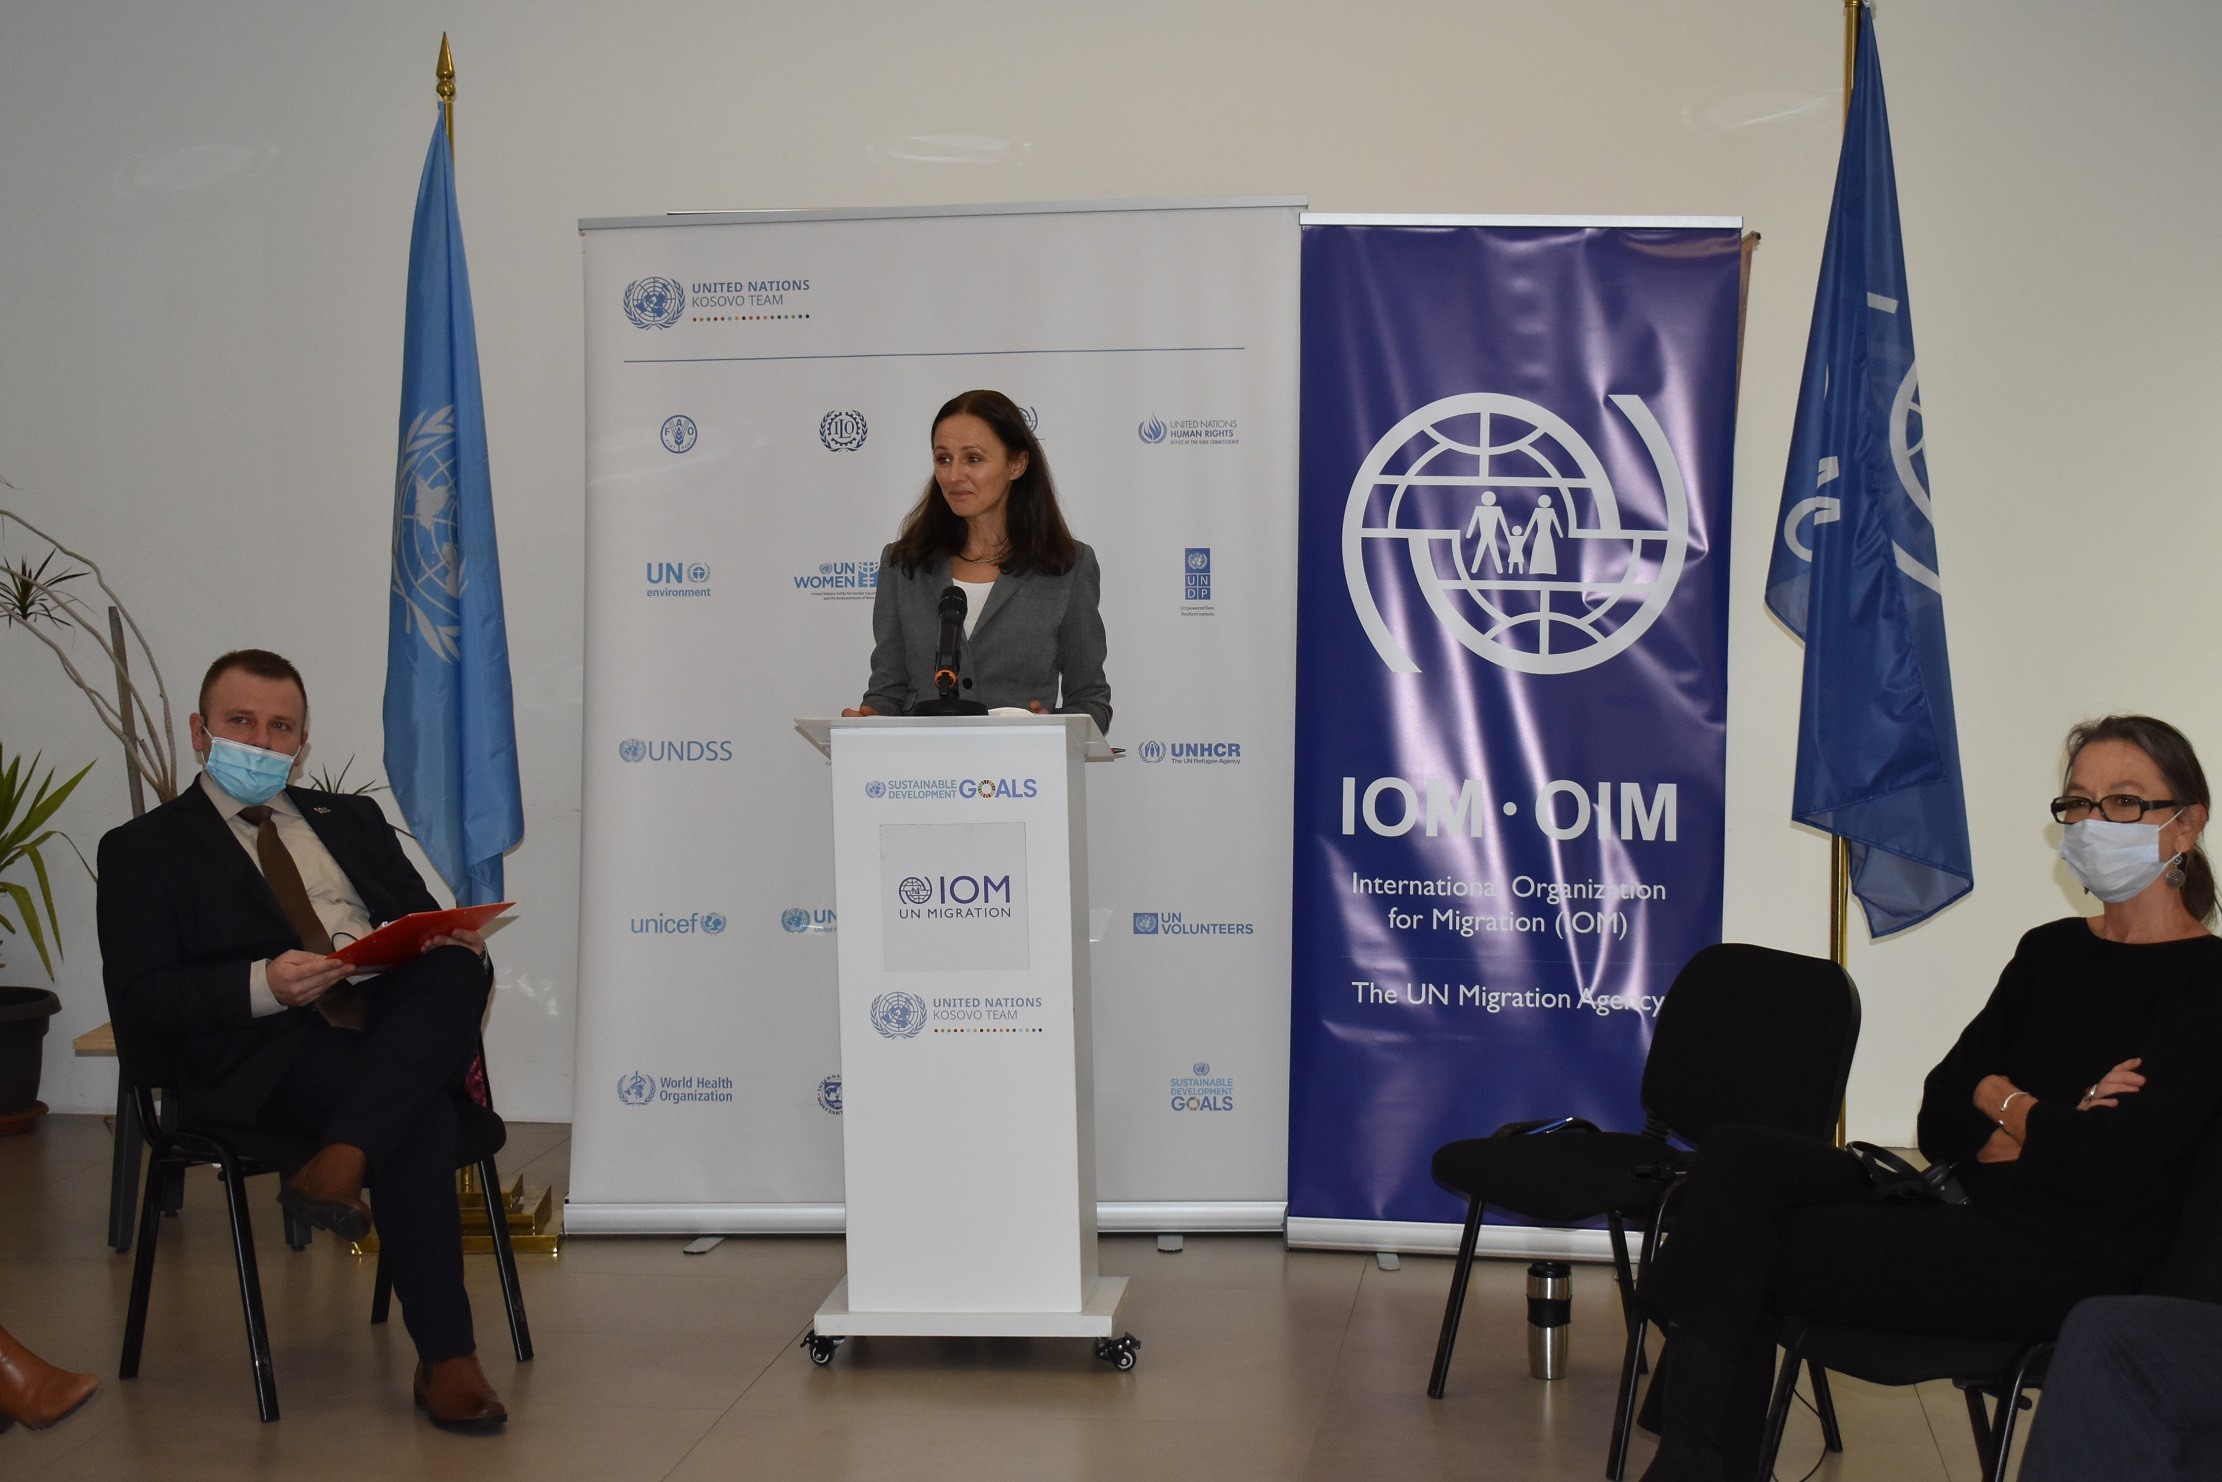 Ekipi i Kombeve të Bashkuara lanson rrjetin lokal të migracionit në Kosovë